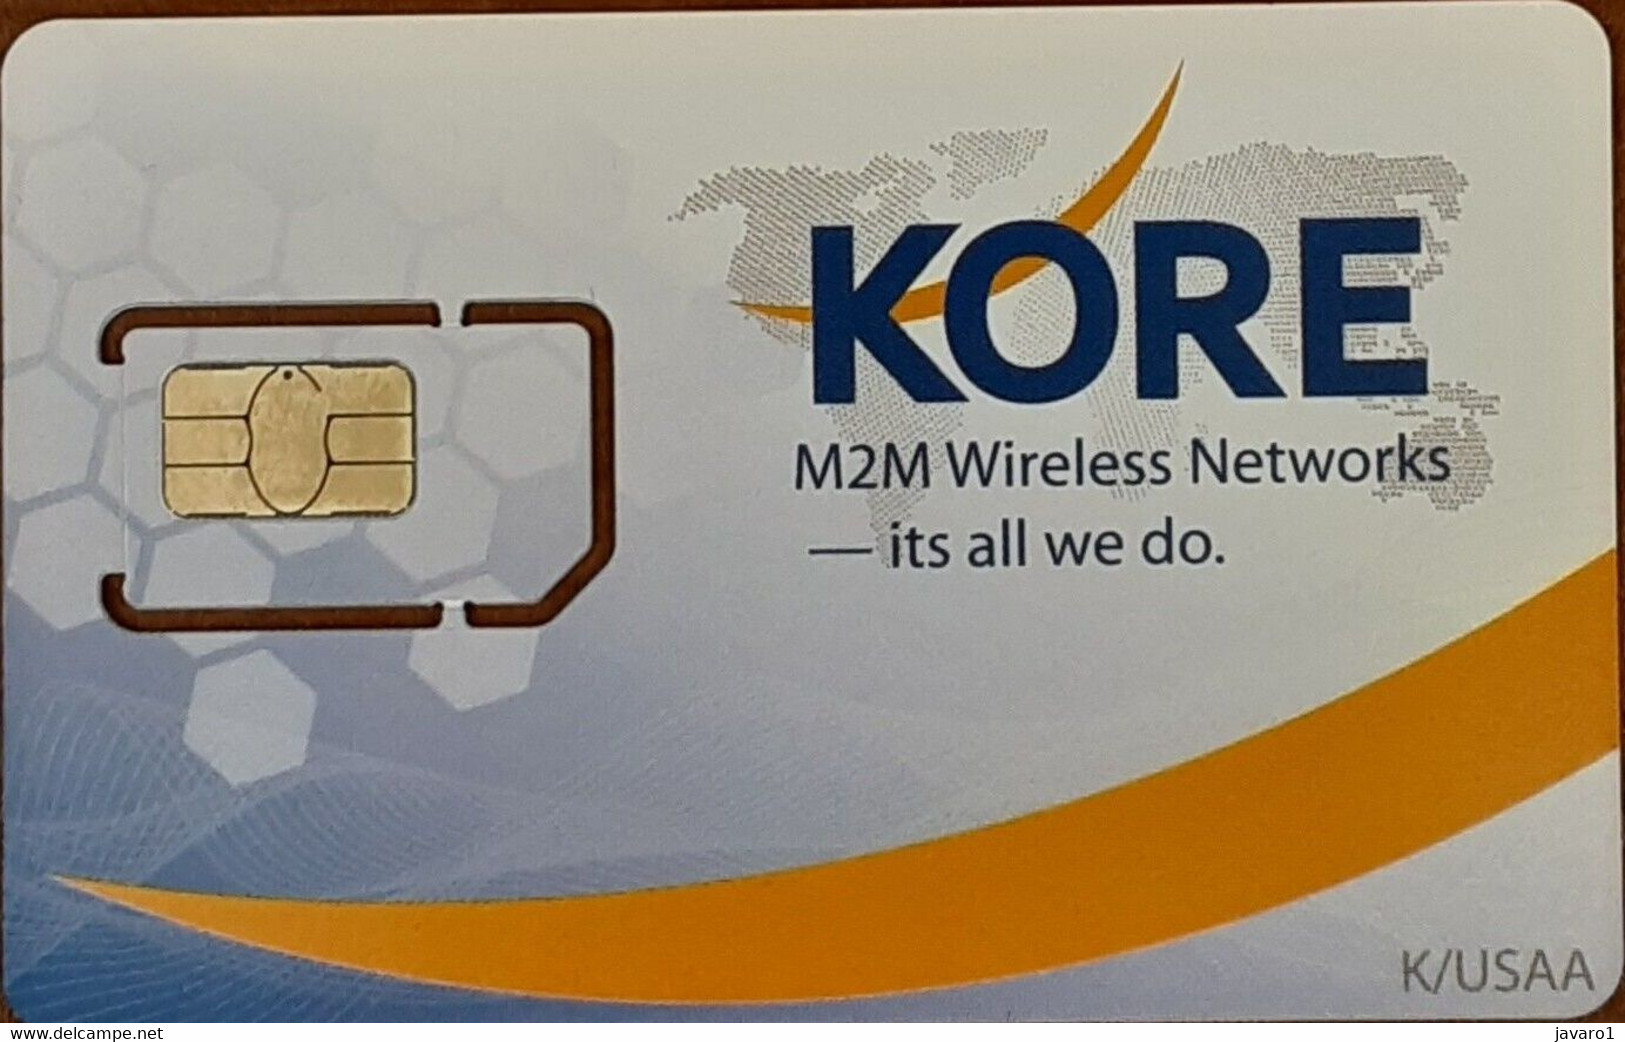 USA : GSM  SIM CARD  : KORE Telematics  MINT / MINI CHIP - [2] Chipkarten